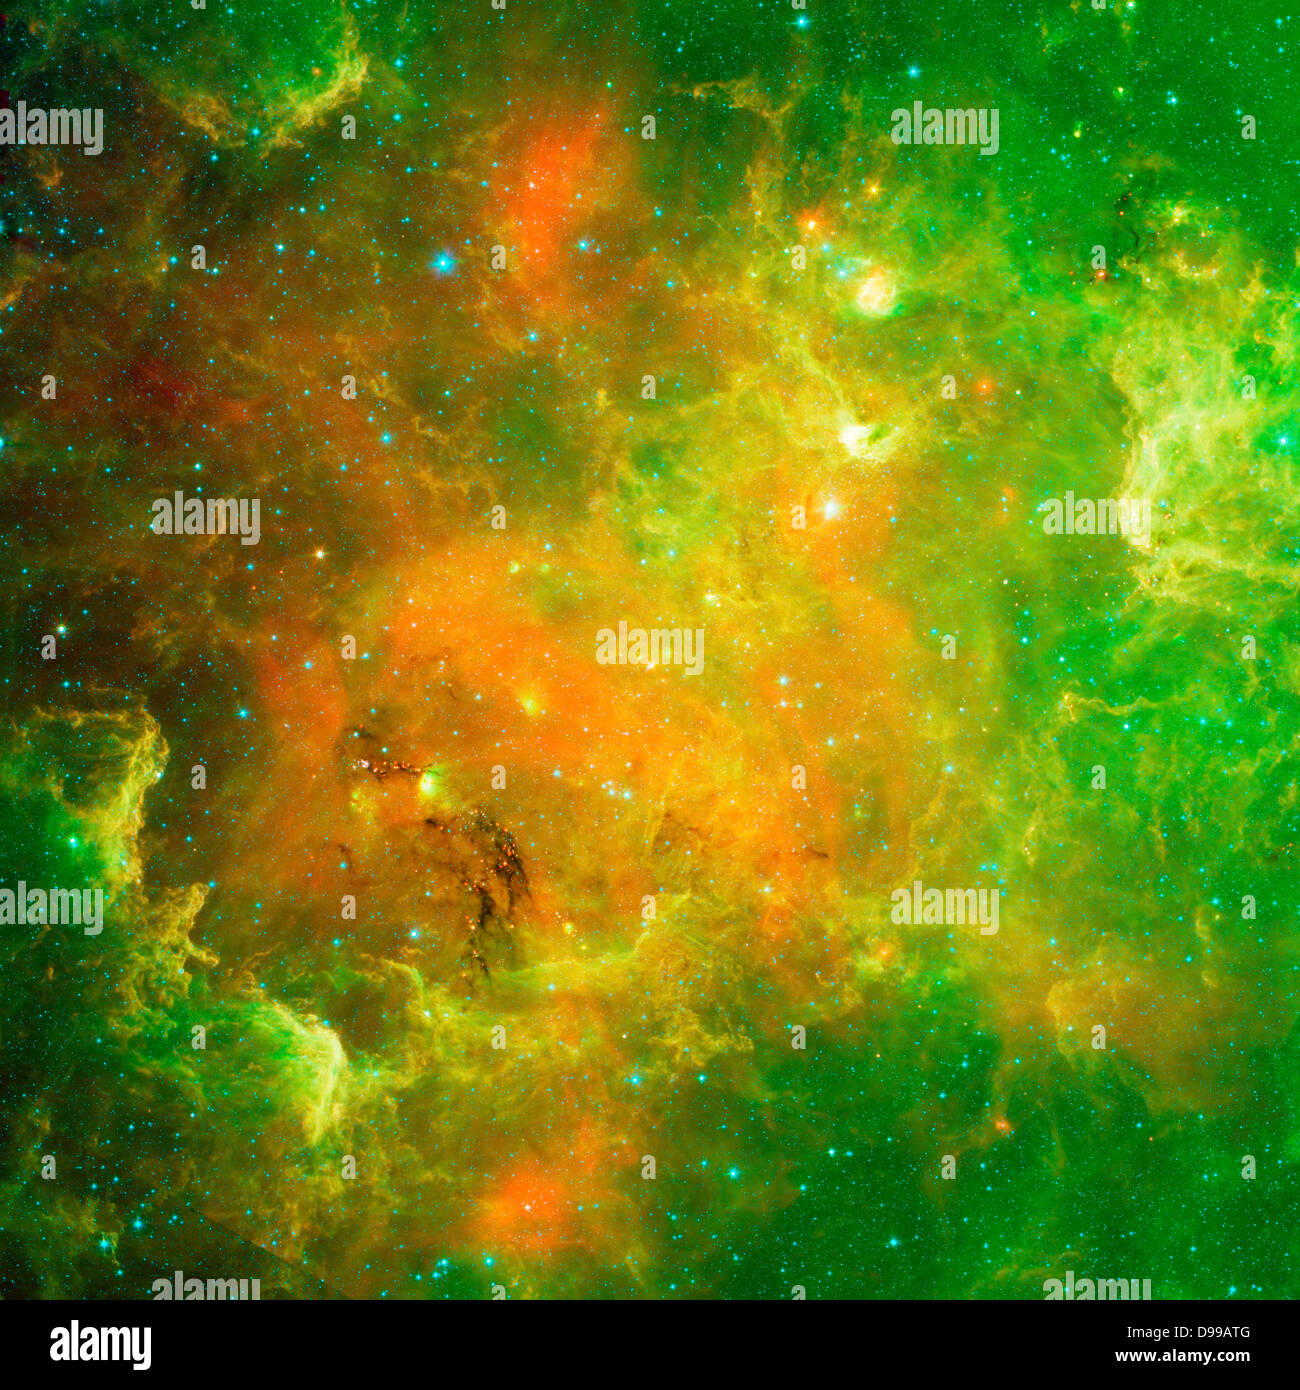 Diese wirbelnde Landschaft von Sternen ist bekannt als der Nordamerika-Nebel. Spitzer. Stockfoto